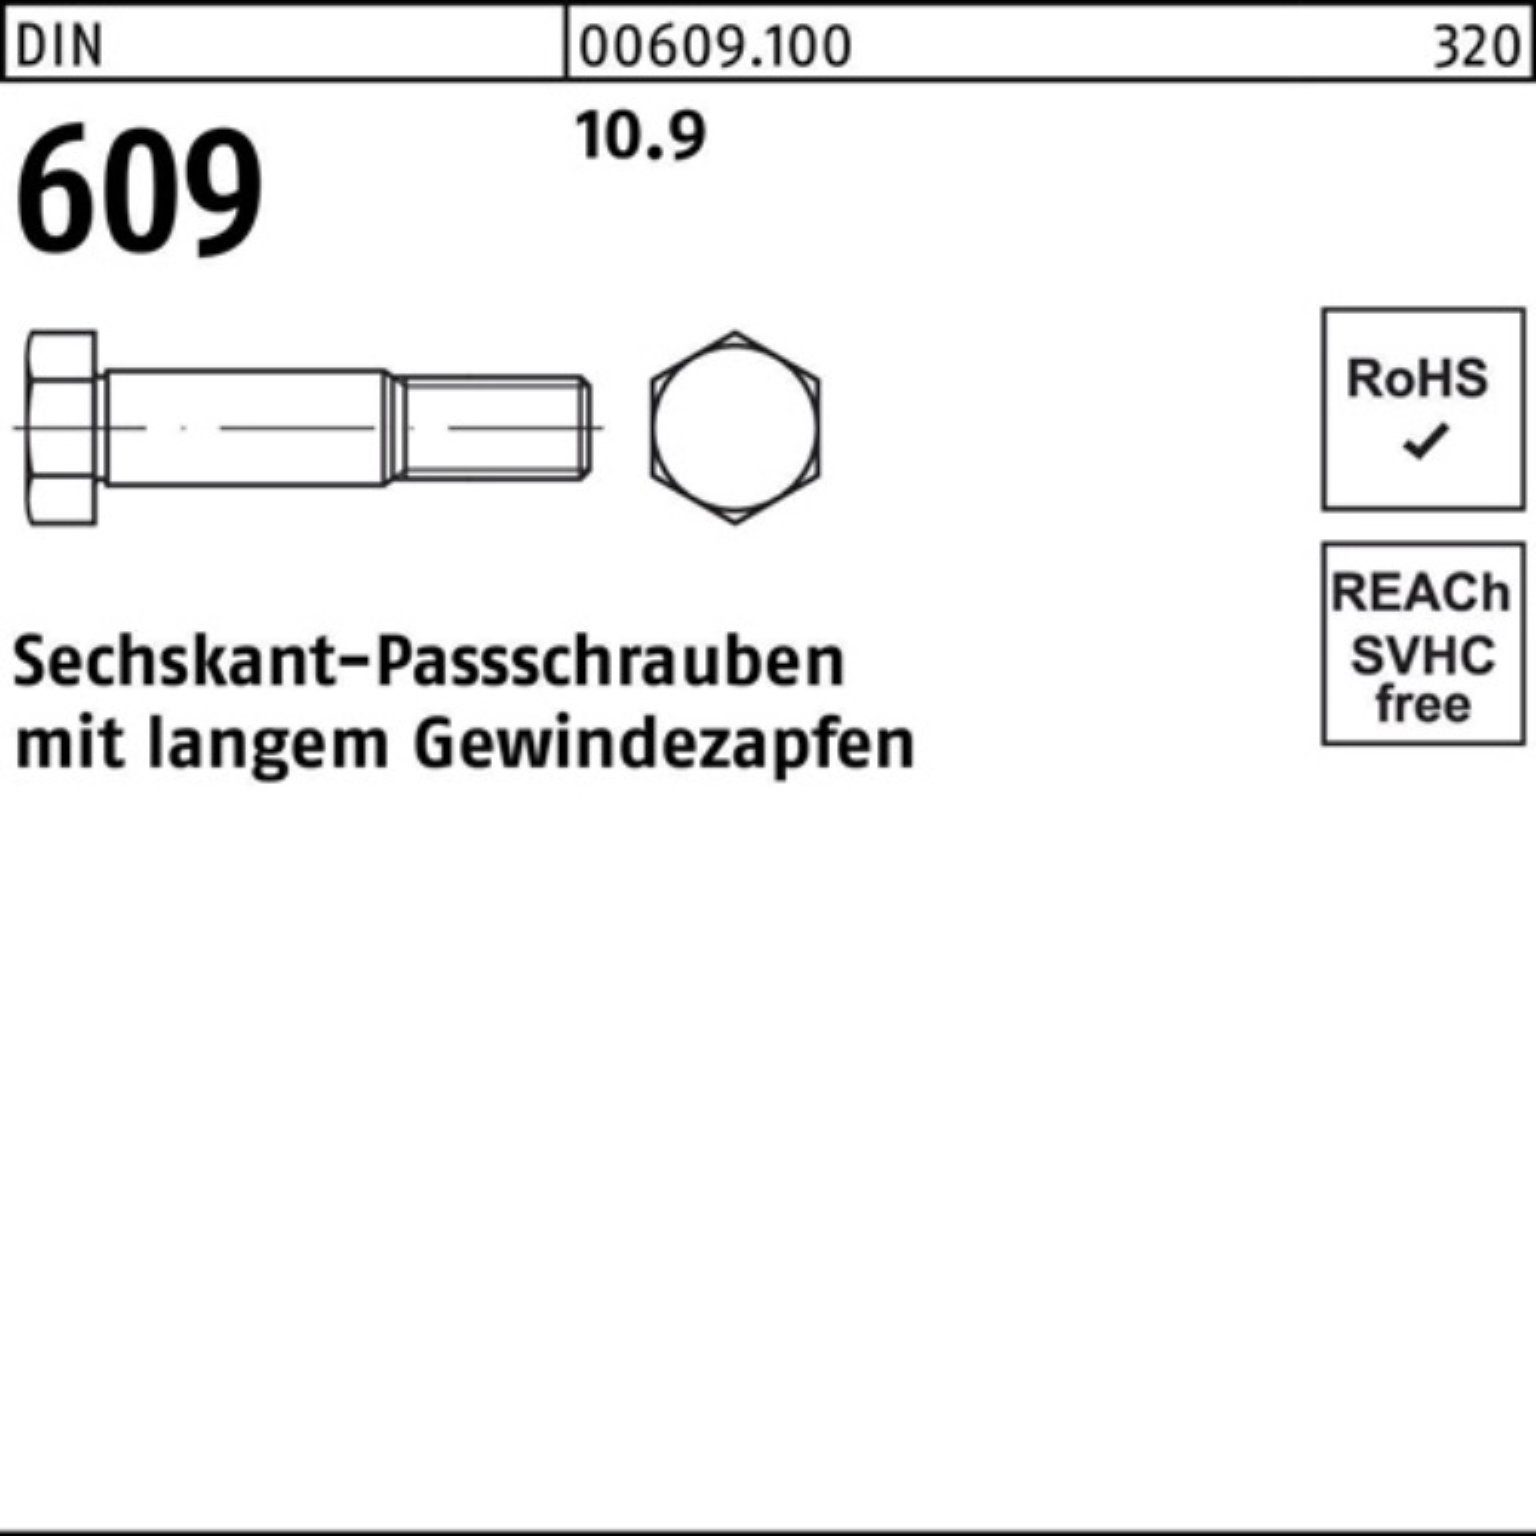 Pack Reyher Schraube Sechskantpassschraube DIN 100er 609 Gewindezapfen M10x 40 langem